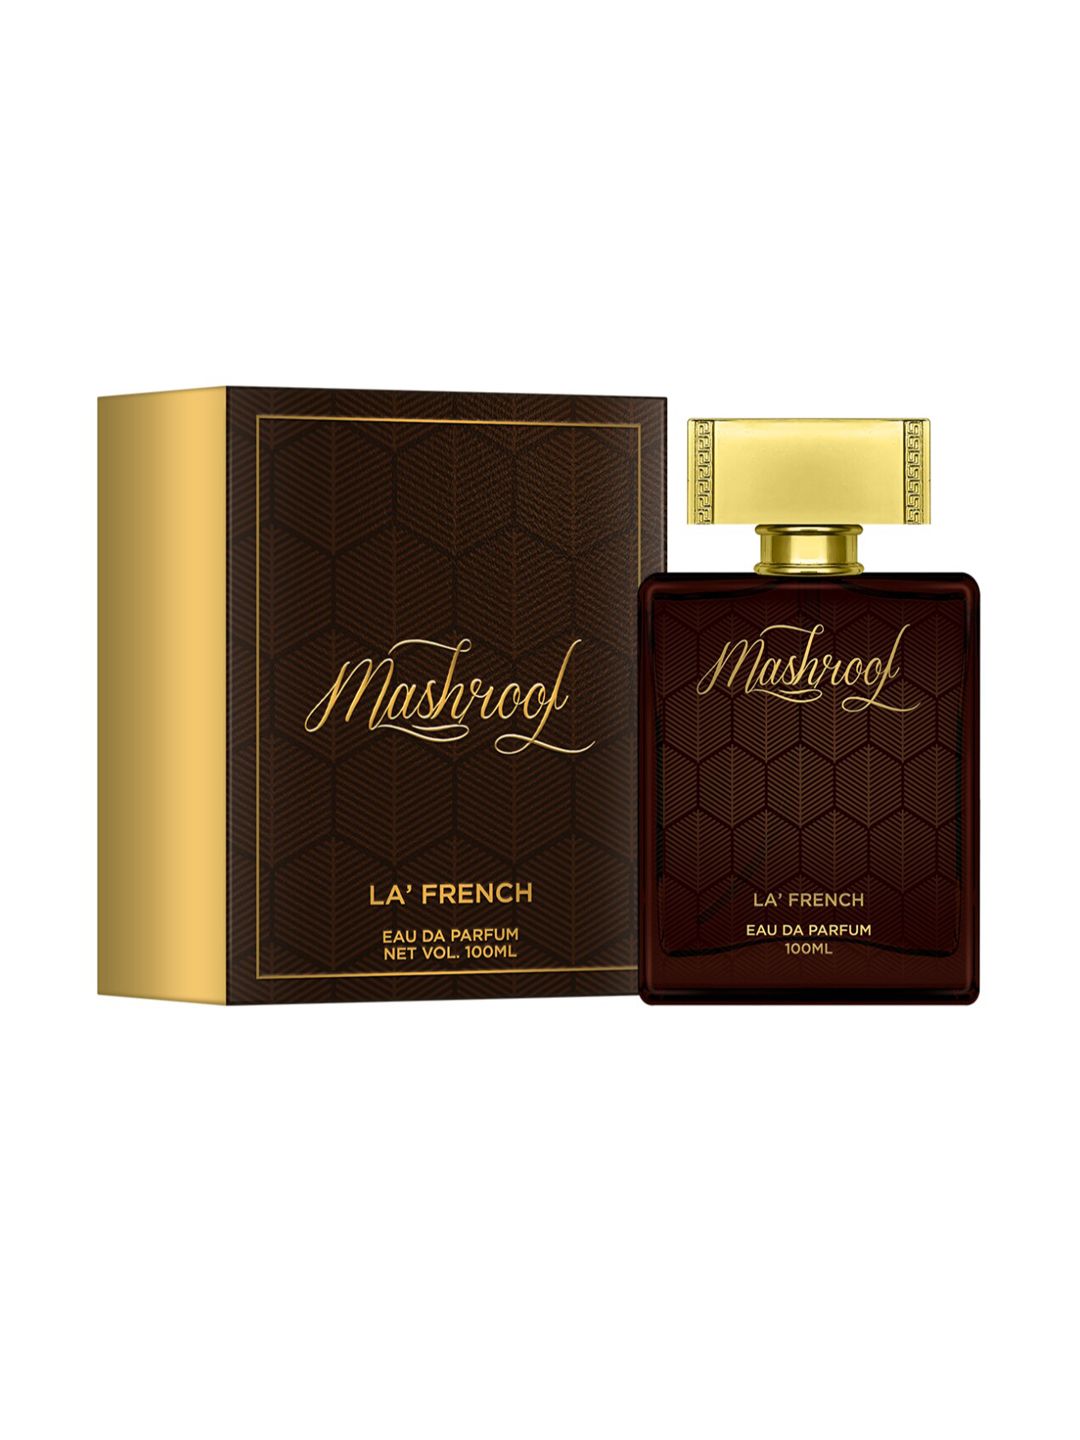 La French Mashroof Eau De Parfum - 100 ml Price in India